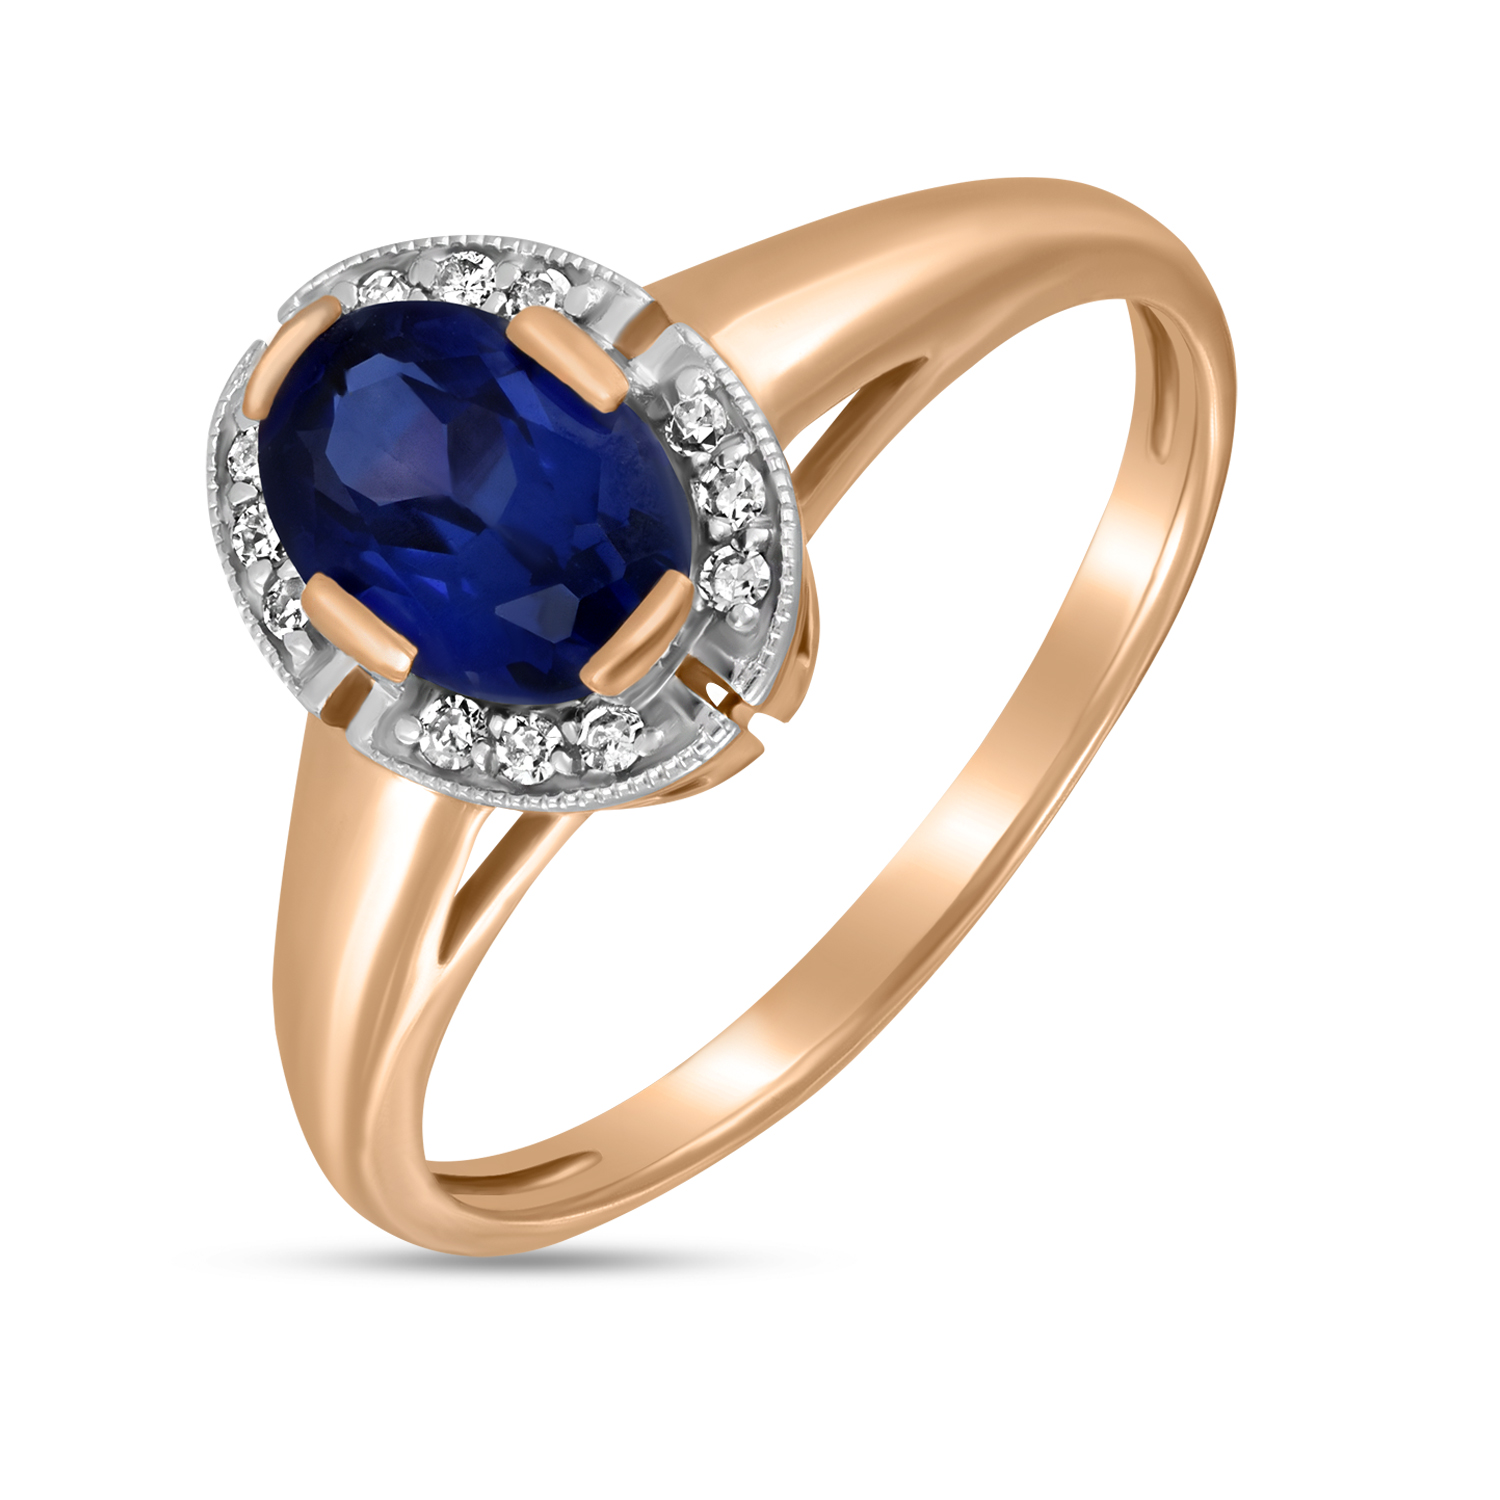 Кольца МЮЗ Золотое кольцо с бриллиантами и выращенным сапфиром кольца мюз золотое кольцо с бриллиантами и выращенным сапфиром